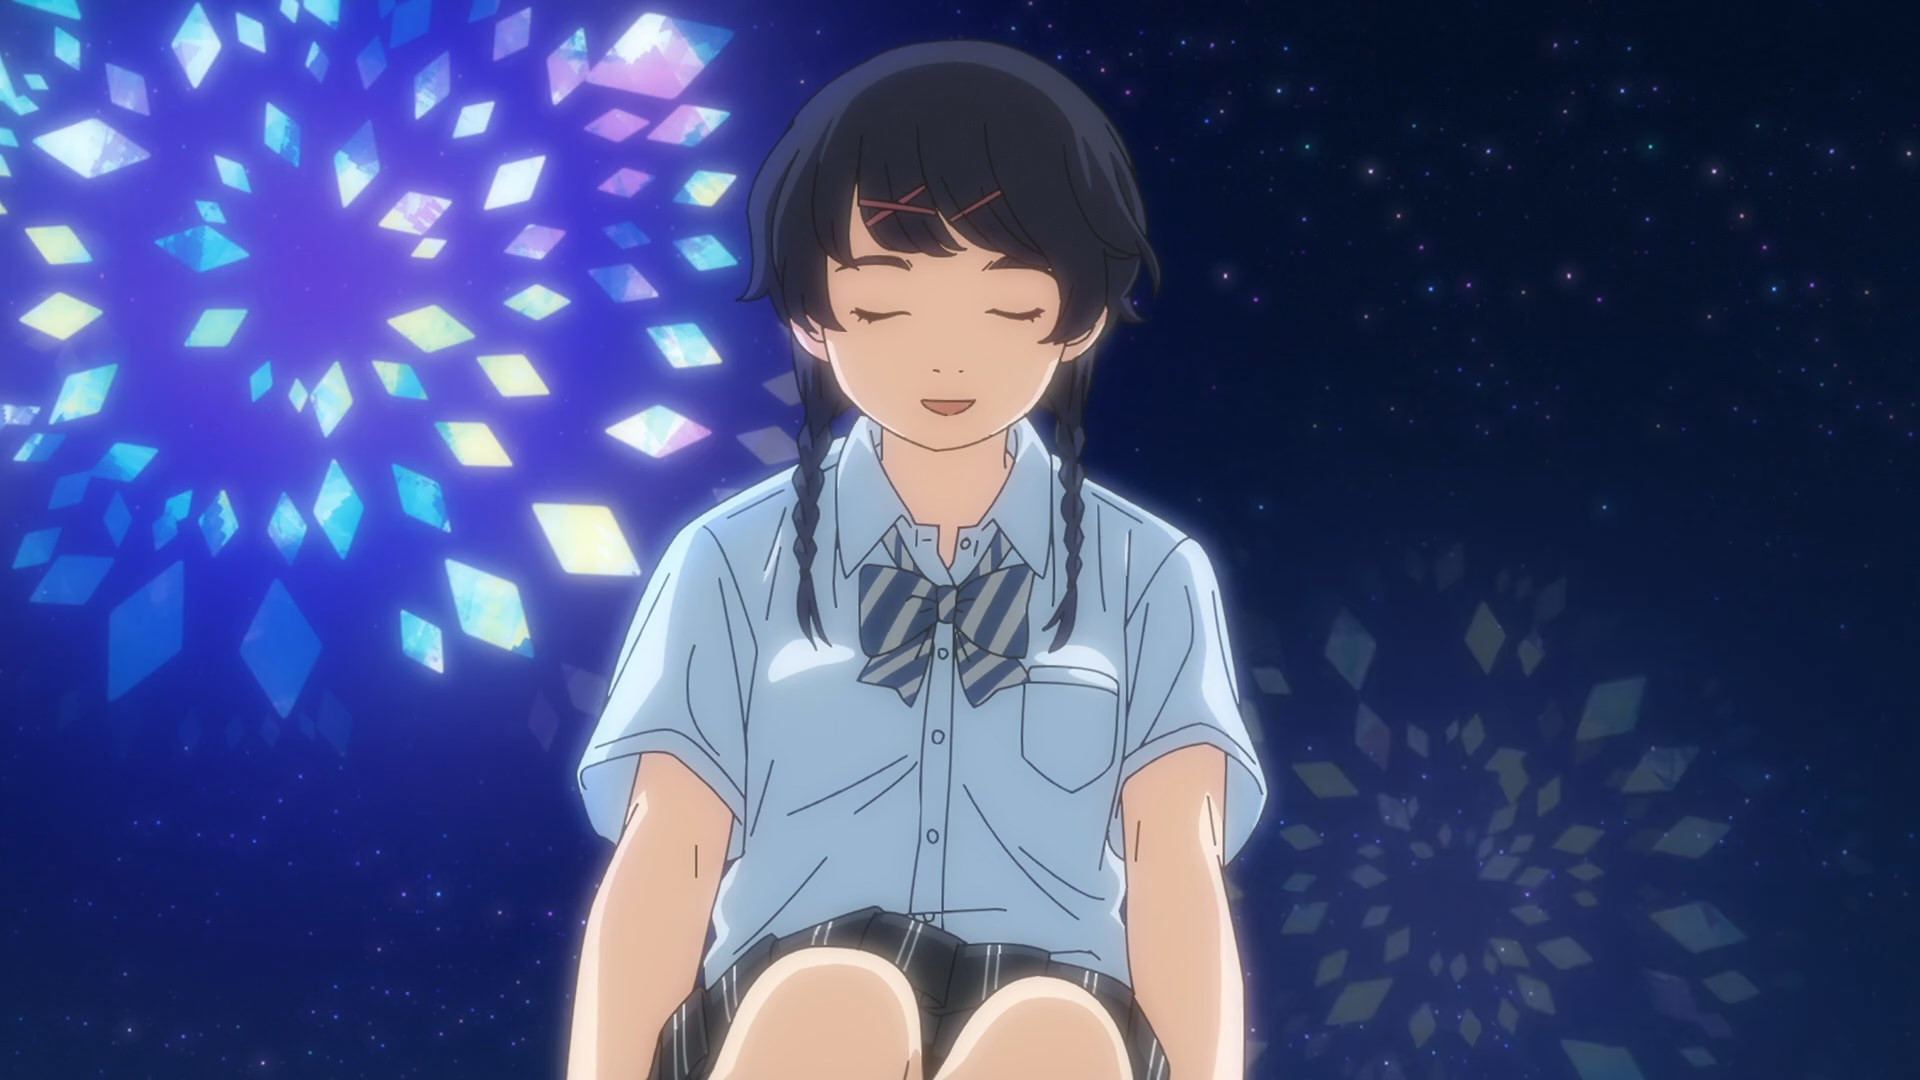 Kimi wa Houkago Insomnia – 04 - Lost in Anime